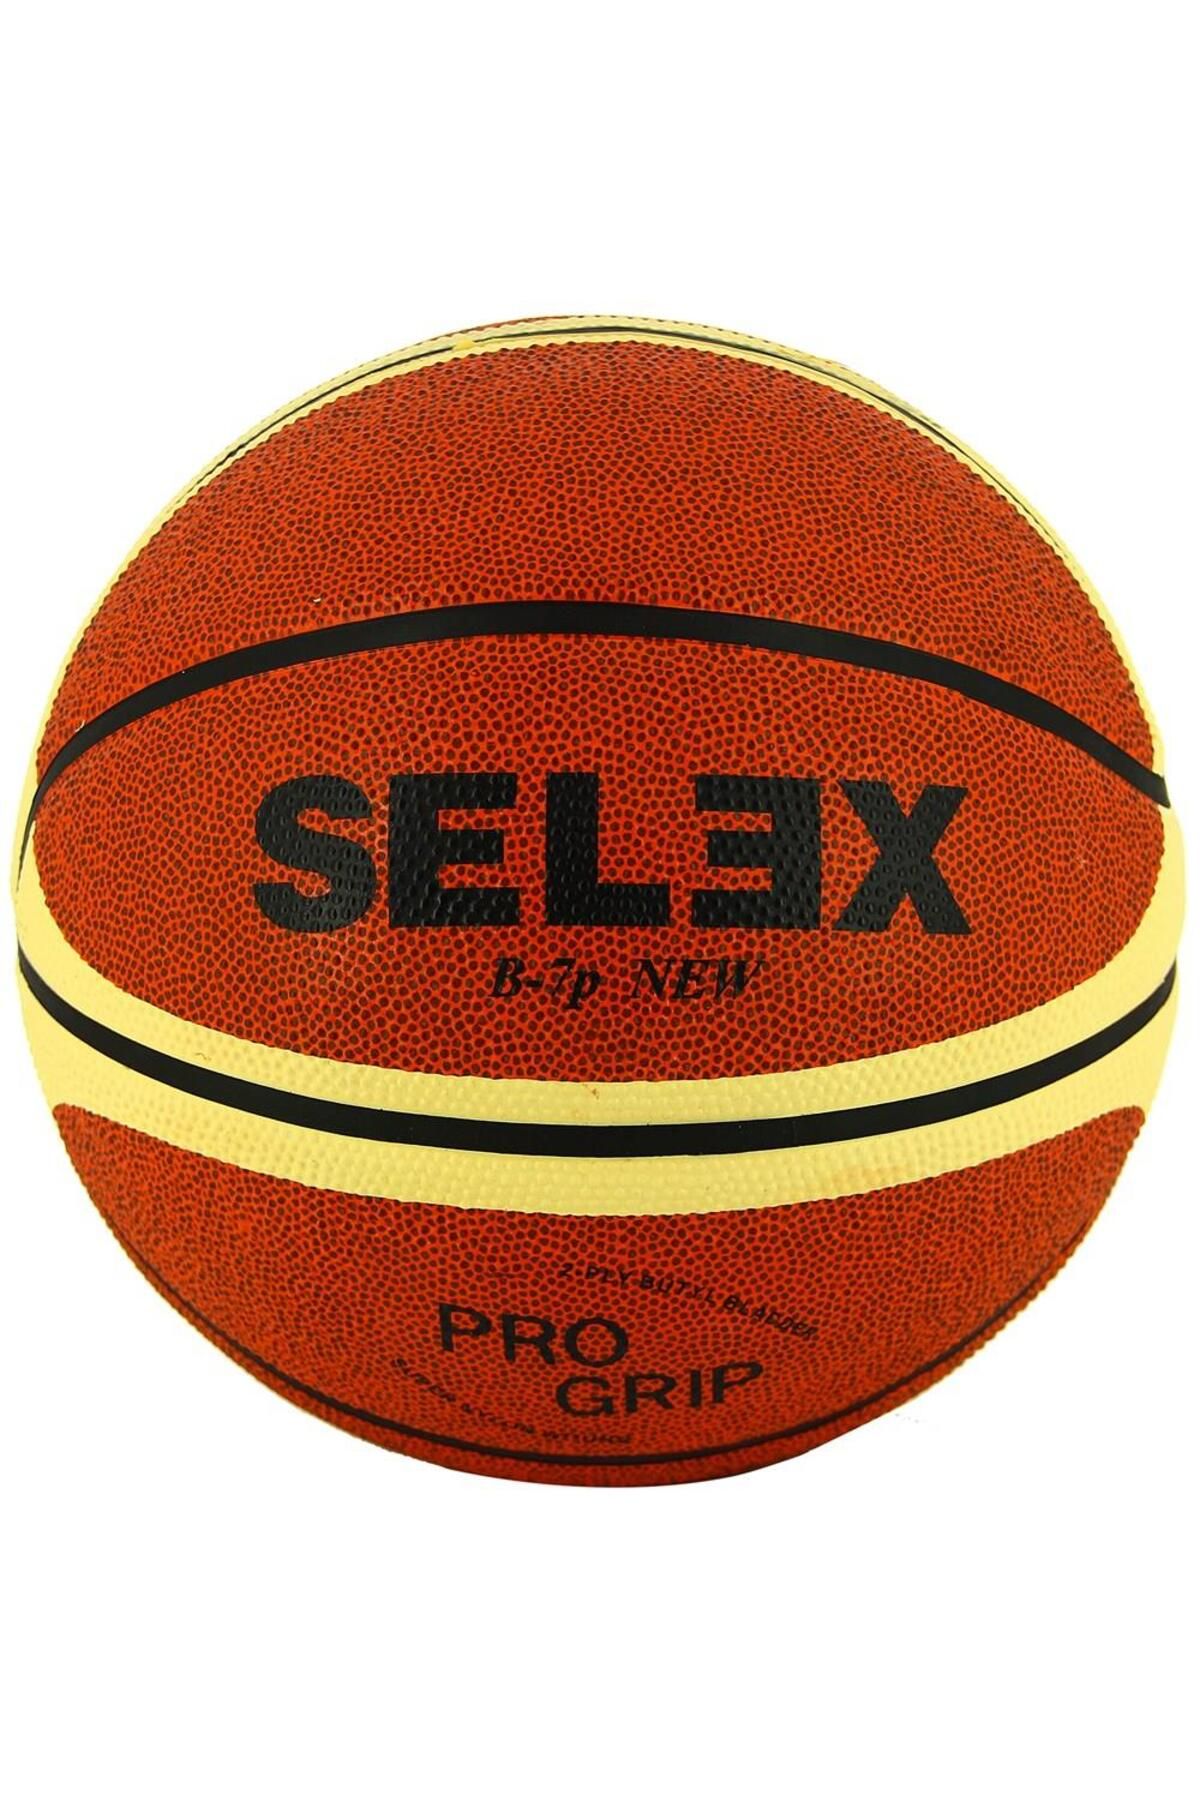 SELEX Slx 700 7 No Basketbol Topu